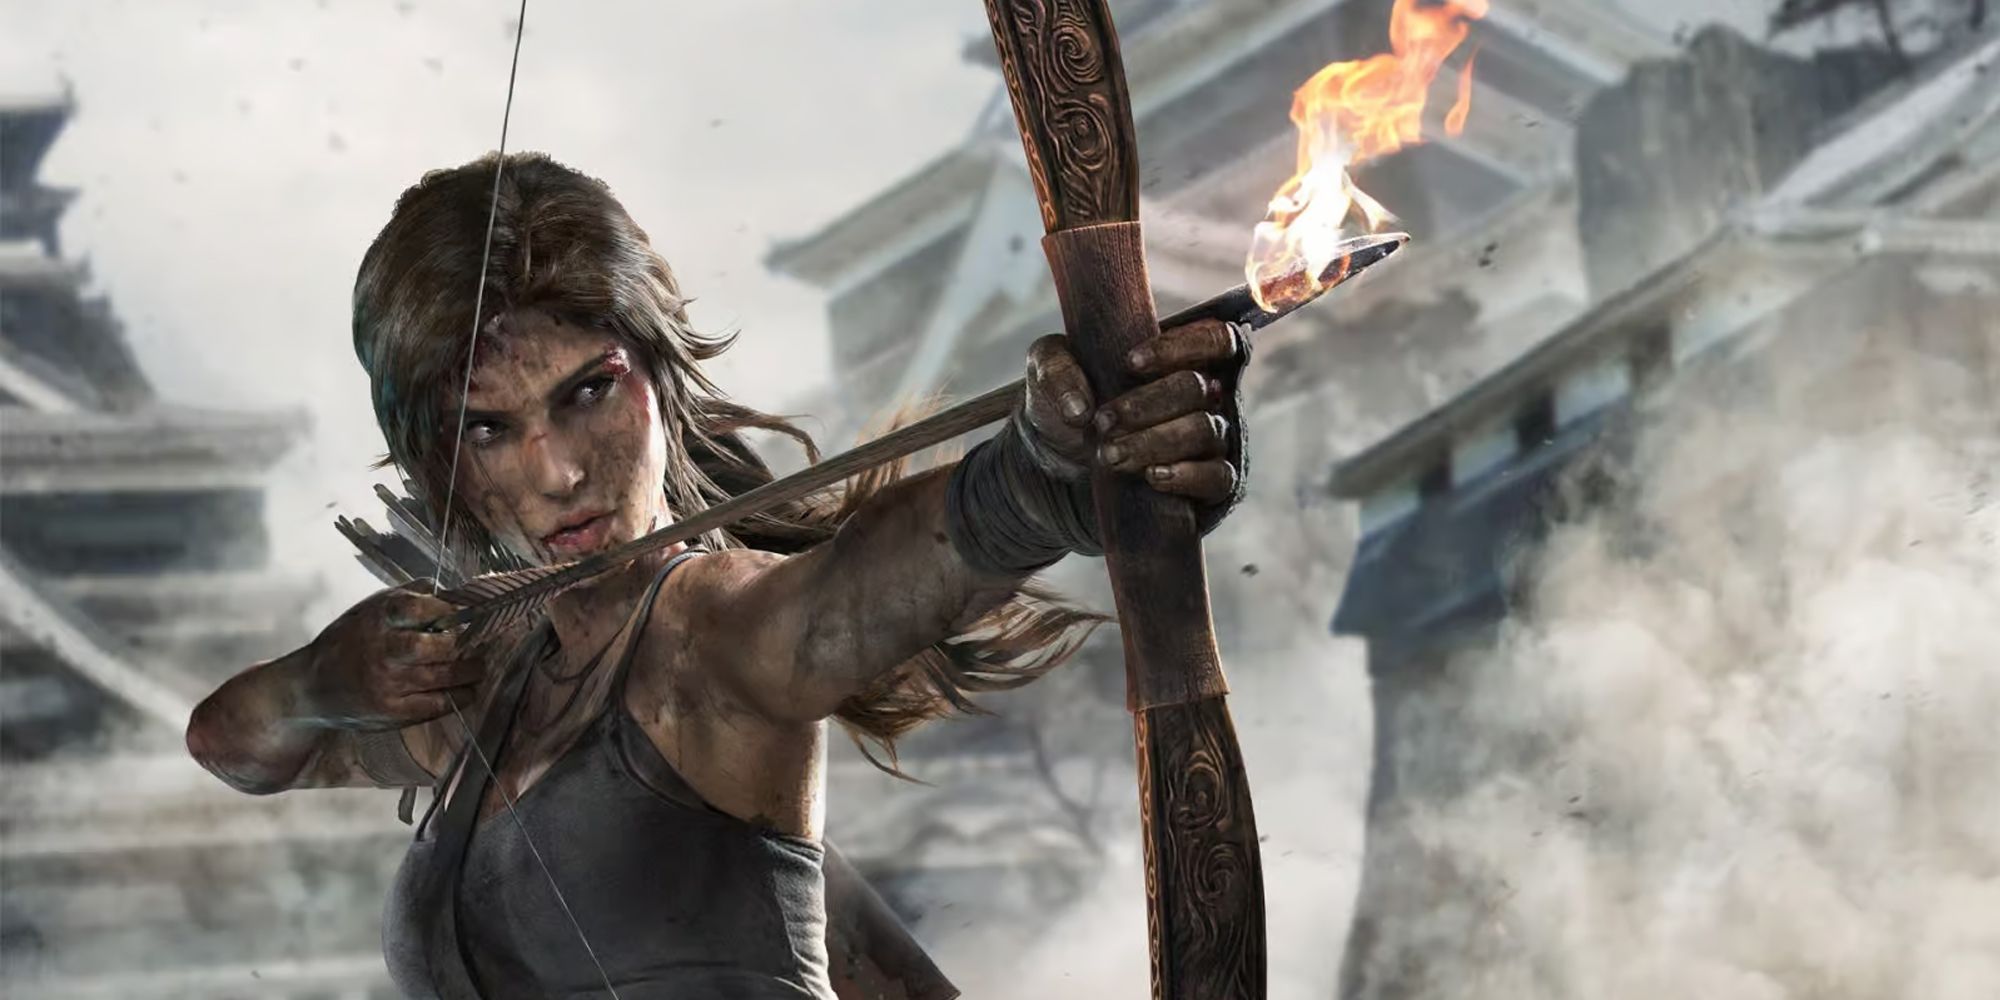 Lara Croft aiming a bow with a fire arrow.